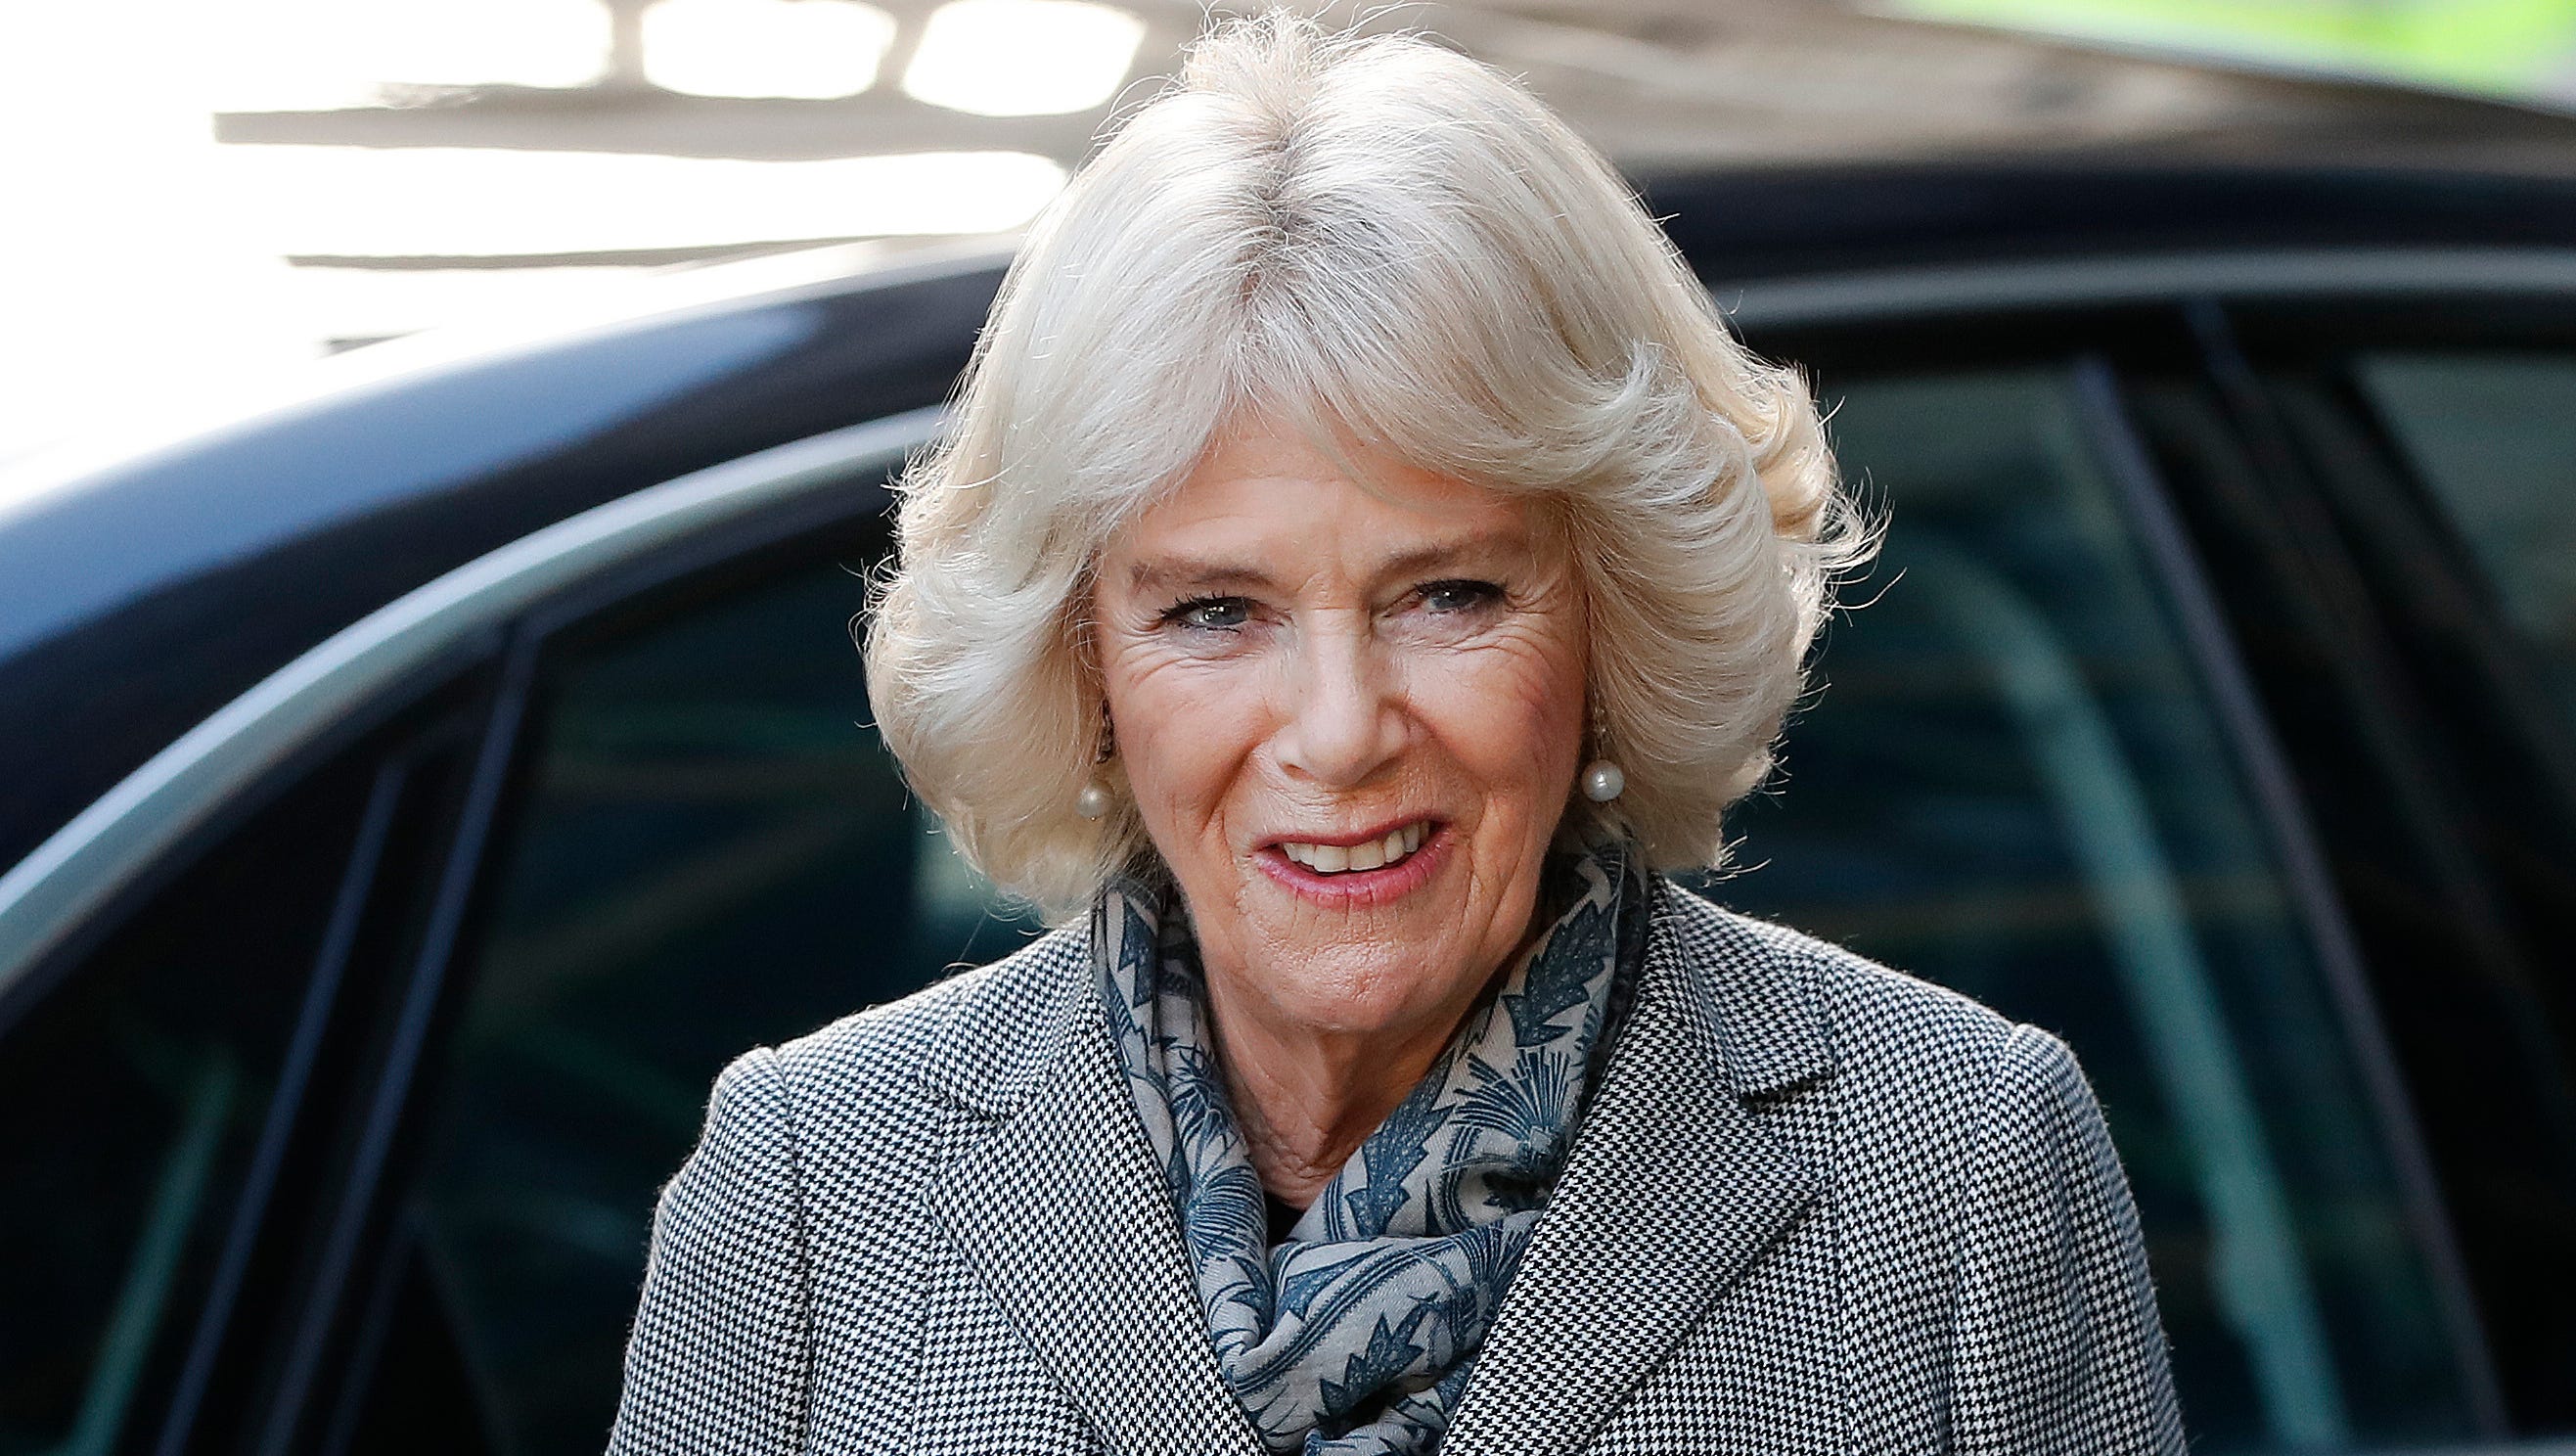 Duchess Camilla bio Britain's next queen consort helped 'save' the